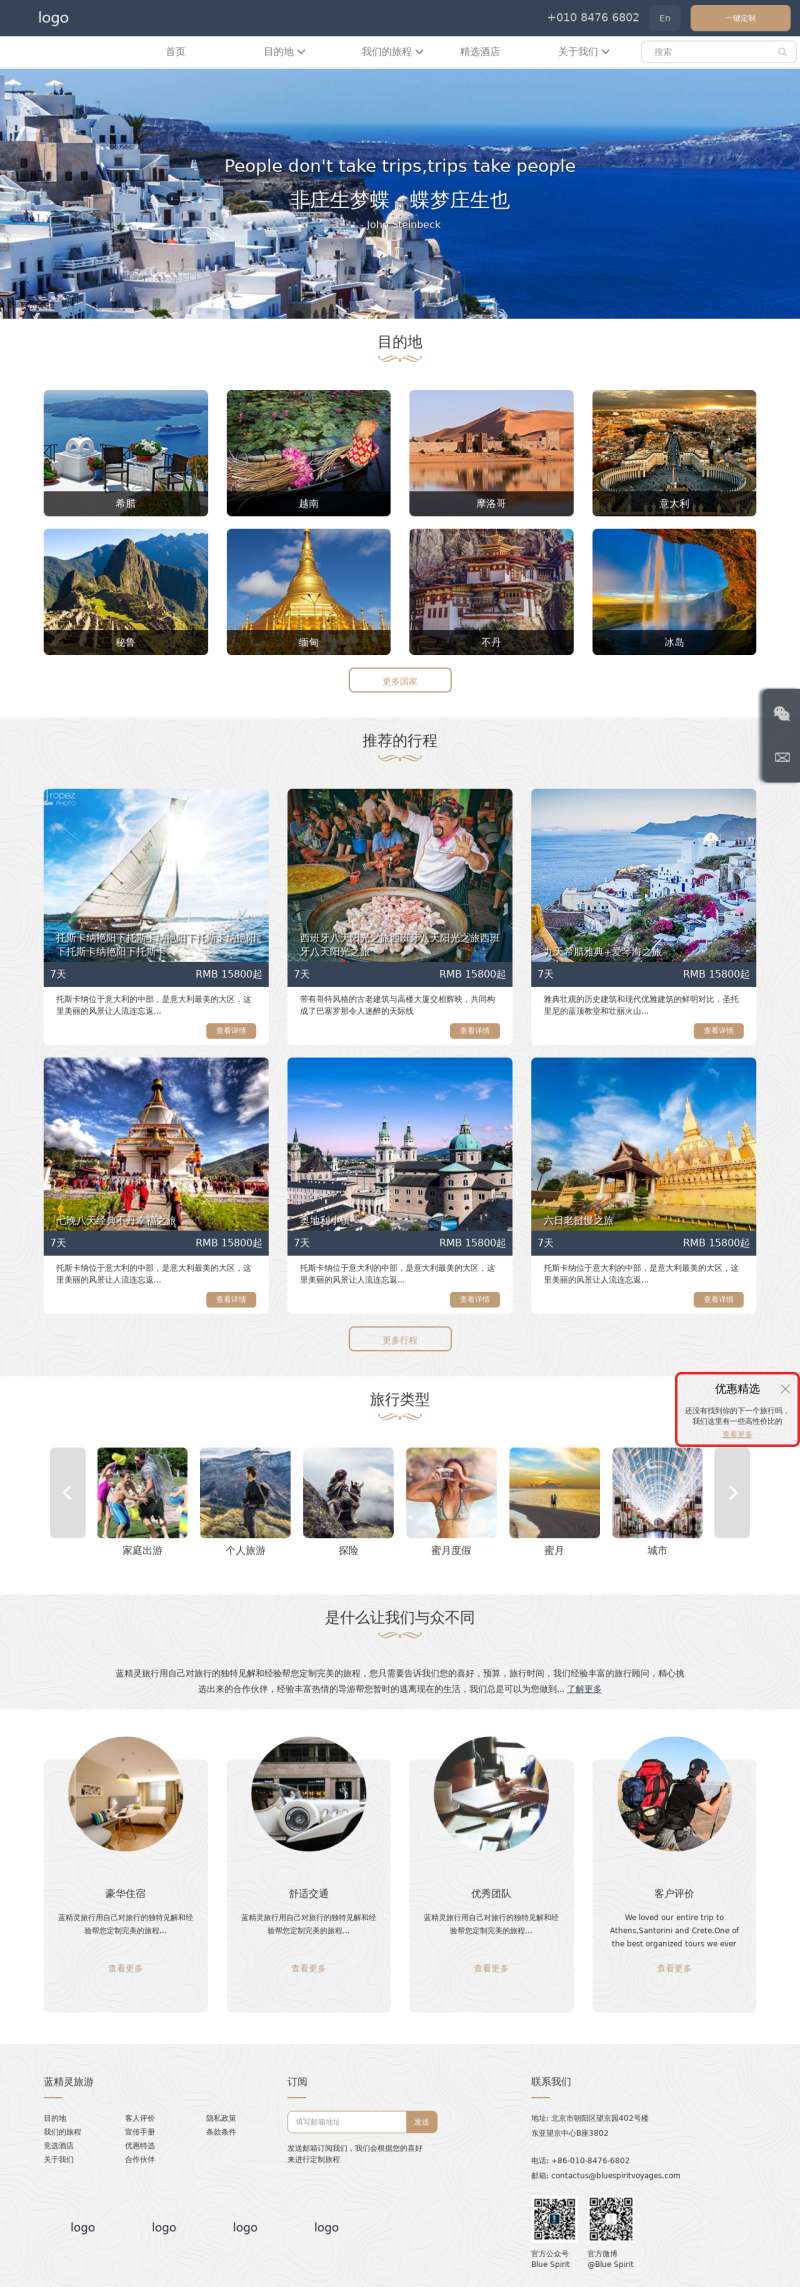 响应式的出国旅游定制公司网站html模板